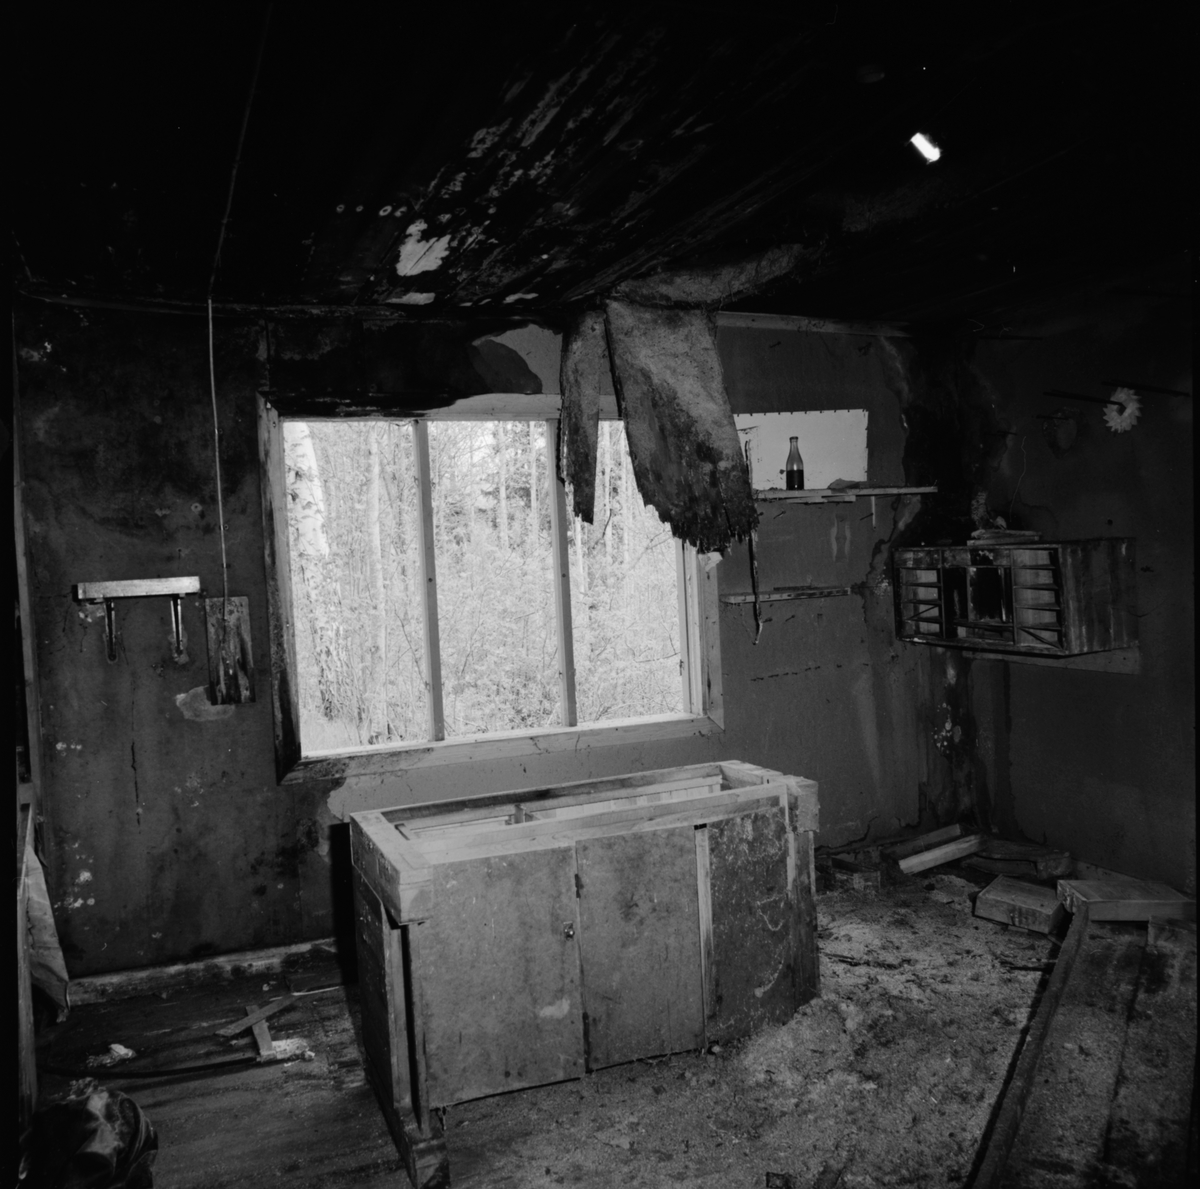 Interiör i timrad gruvstuga från senare delen av 1800-talet intill Konstängsgruvan, Dannemora Gruvor AB, Dannemora, Uppland maj 1991